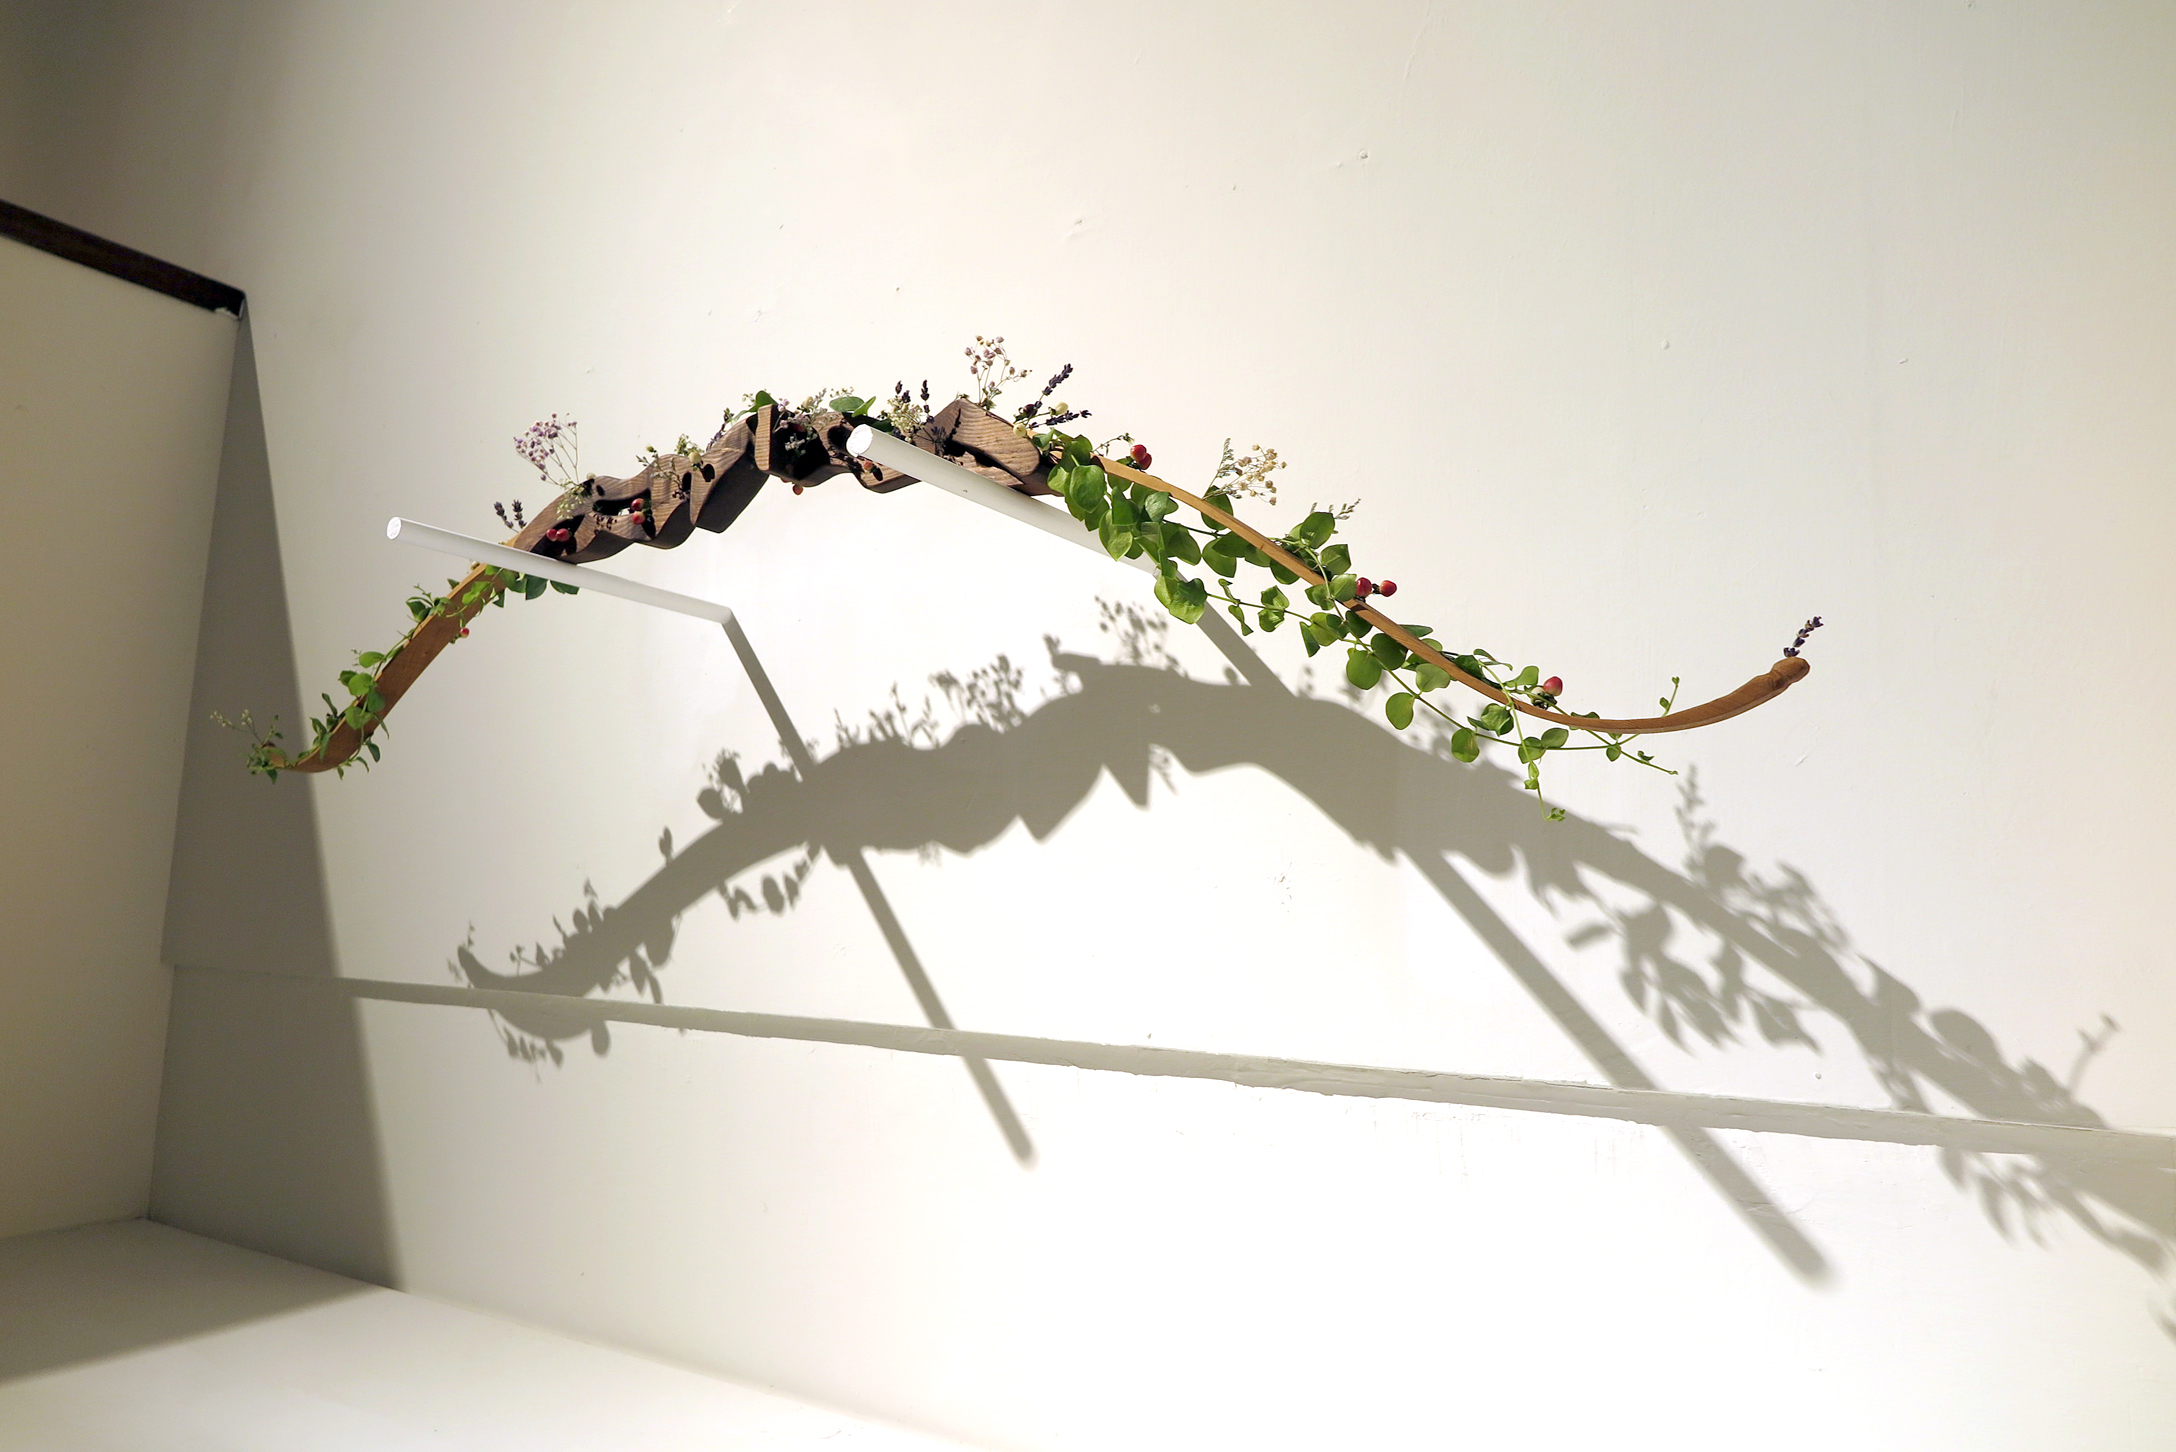 張納祈同學的作品「放下」對戰爭的正當性提出質問，並透過親手雕刻的弓箭與裝置上的植物來表達「愛」才是能讓紛爭得以消弭的最終答案。